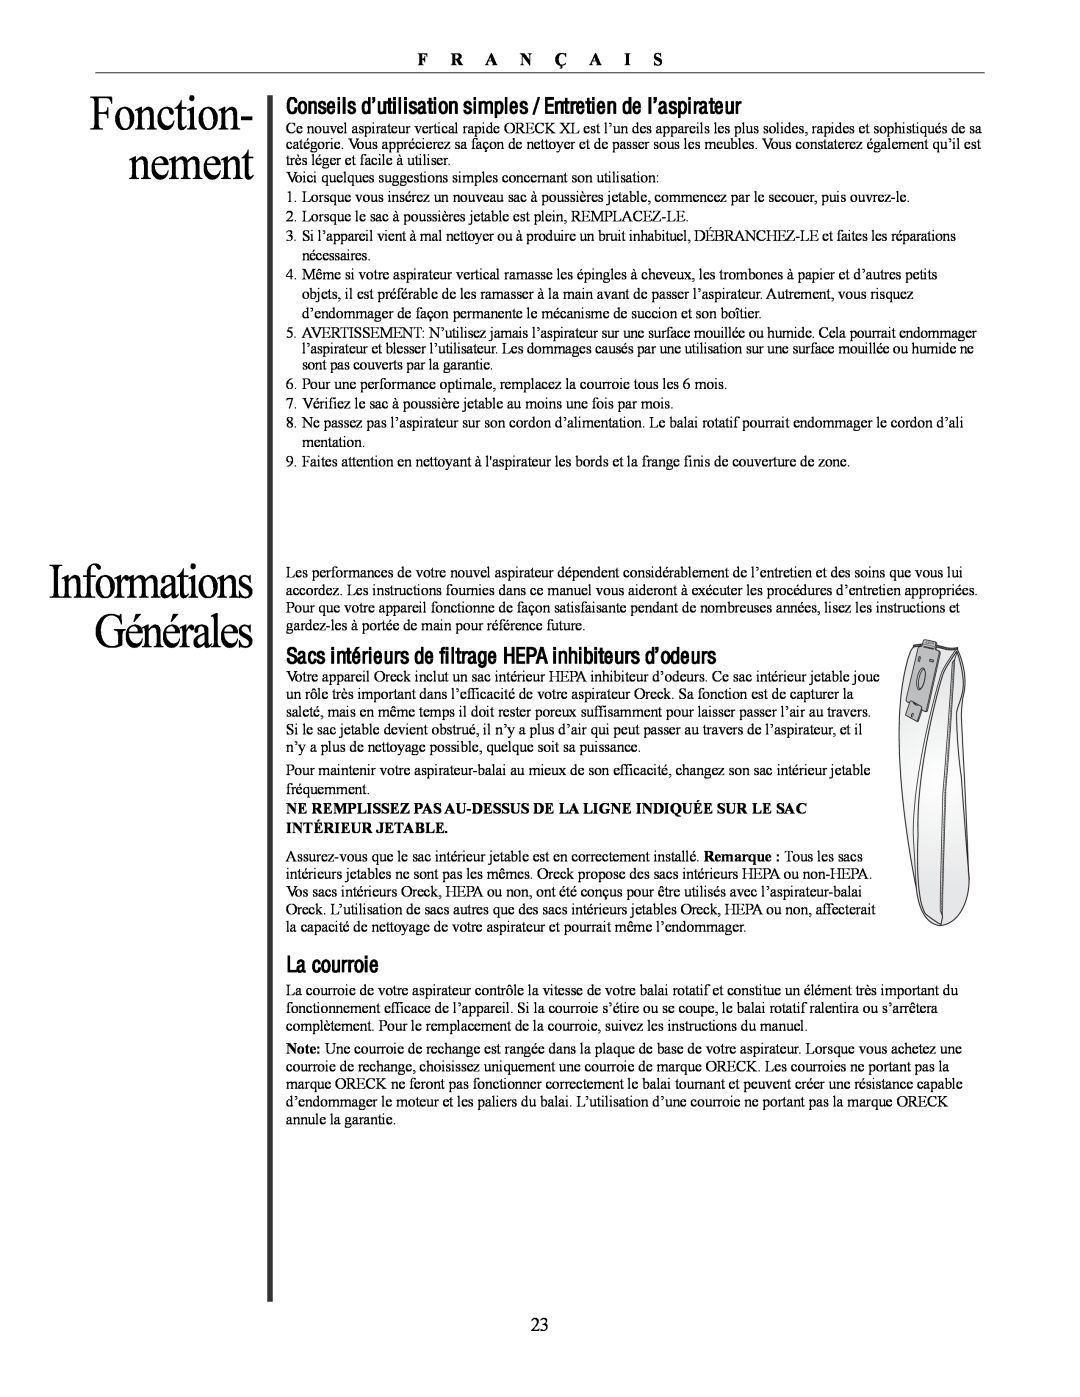 Oreck U4300 manual Fonction- nement, Informations Générales 